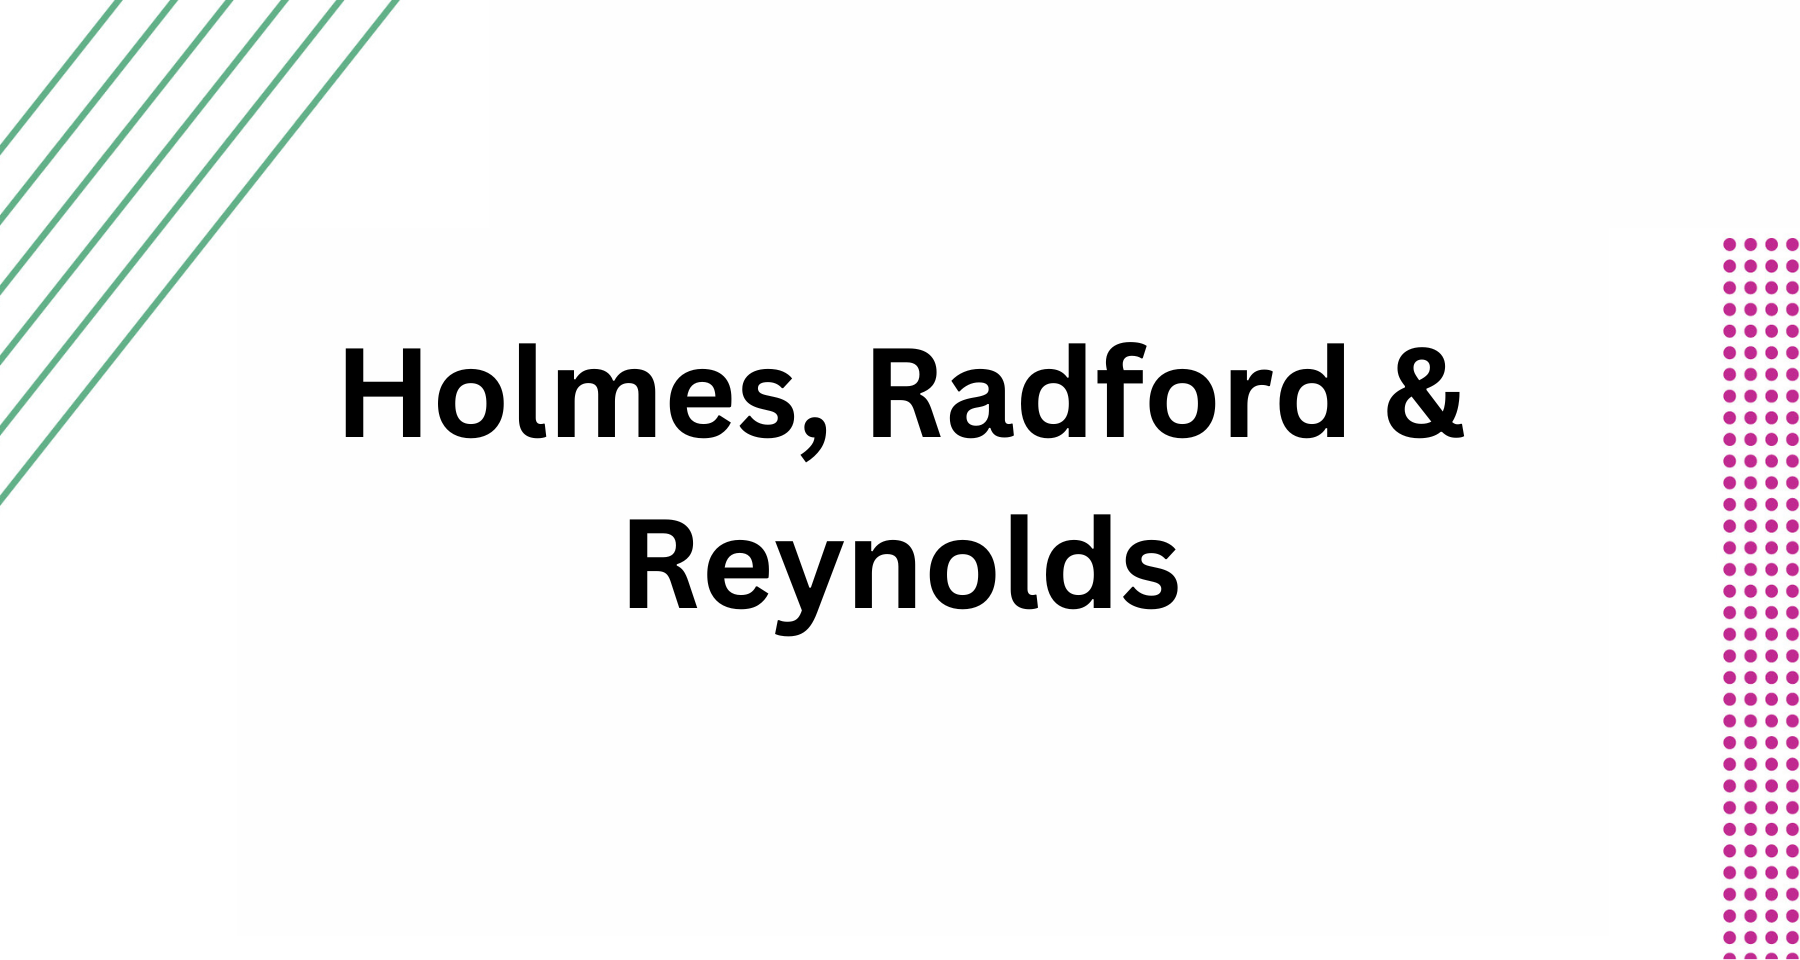 Holmes, Radford & Reynolds